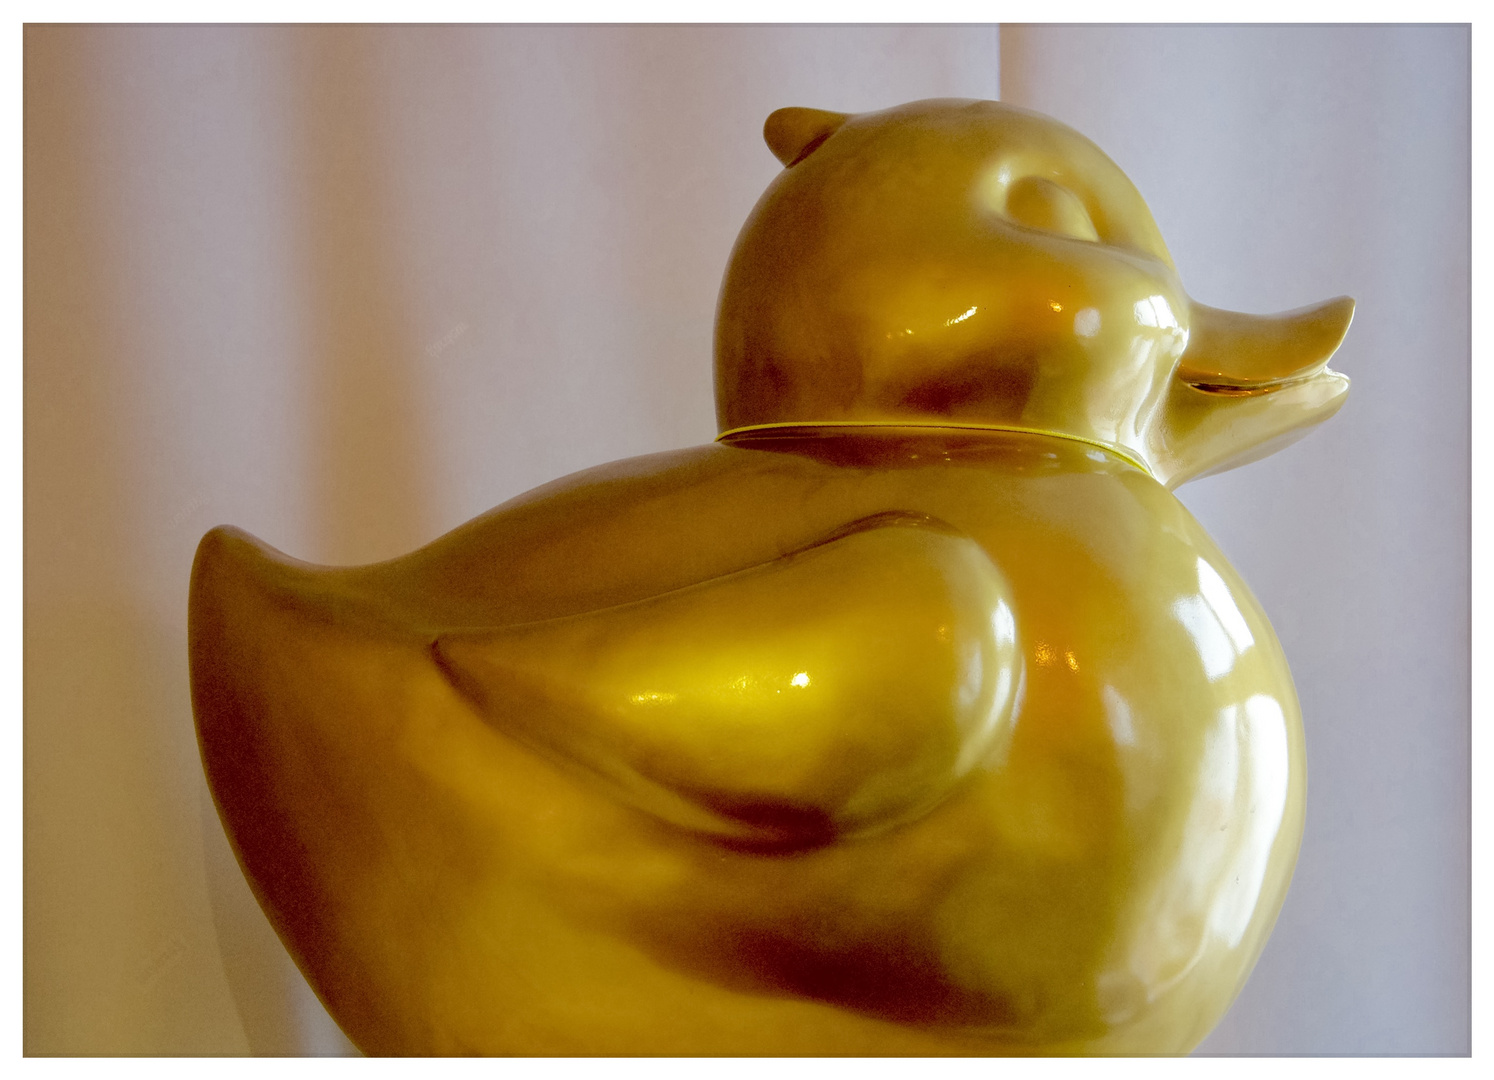 Gold Duck